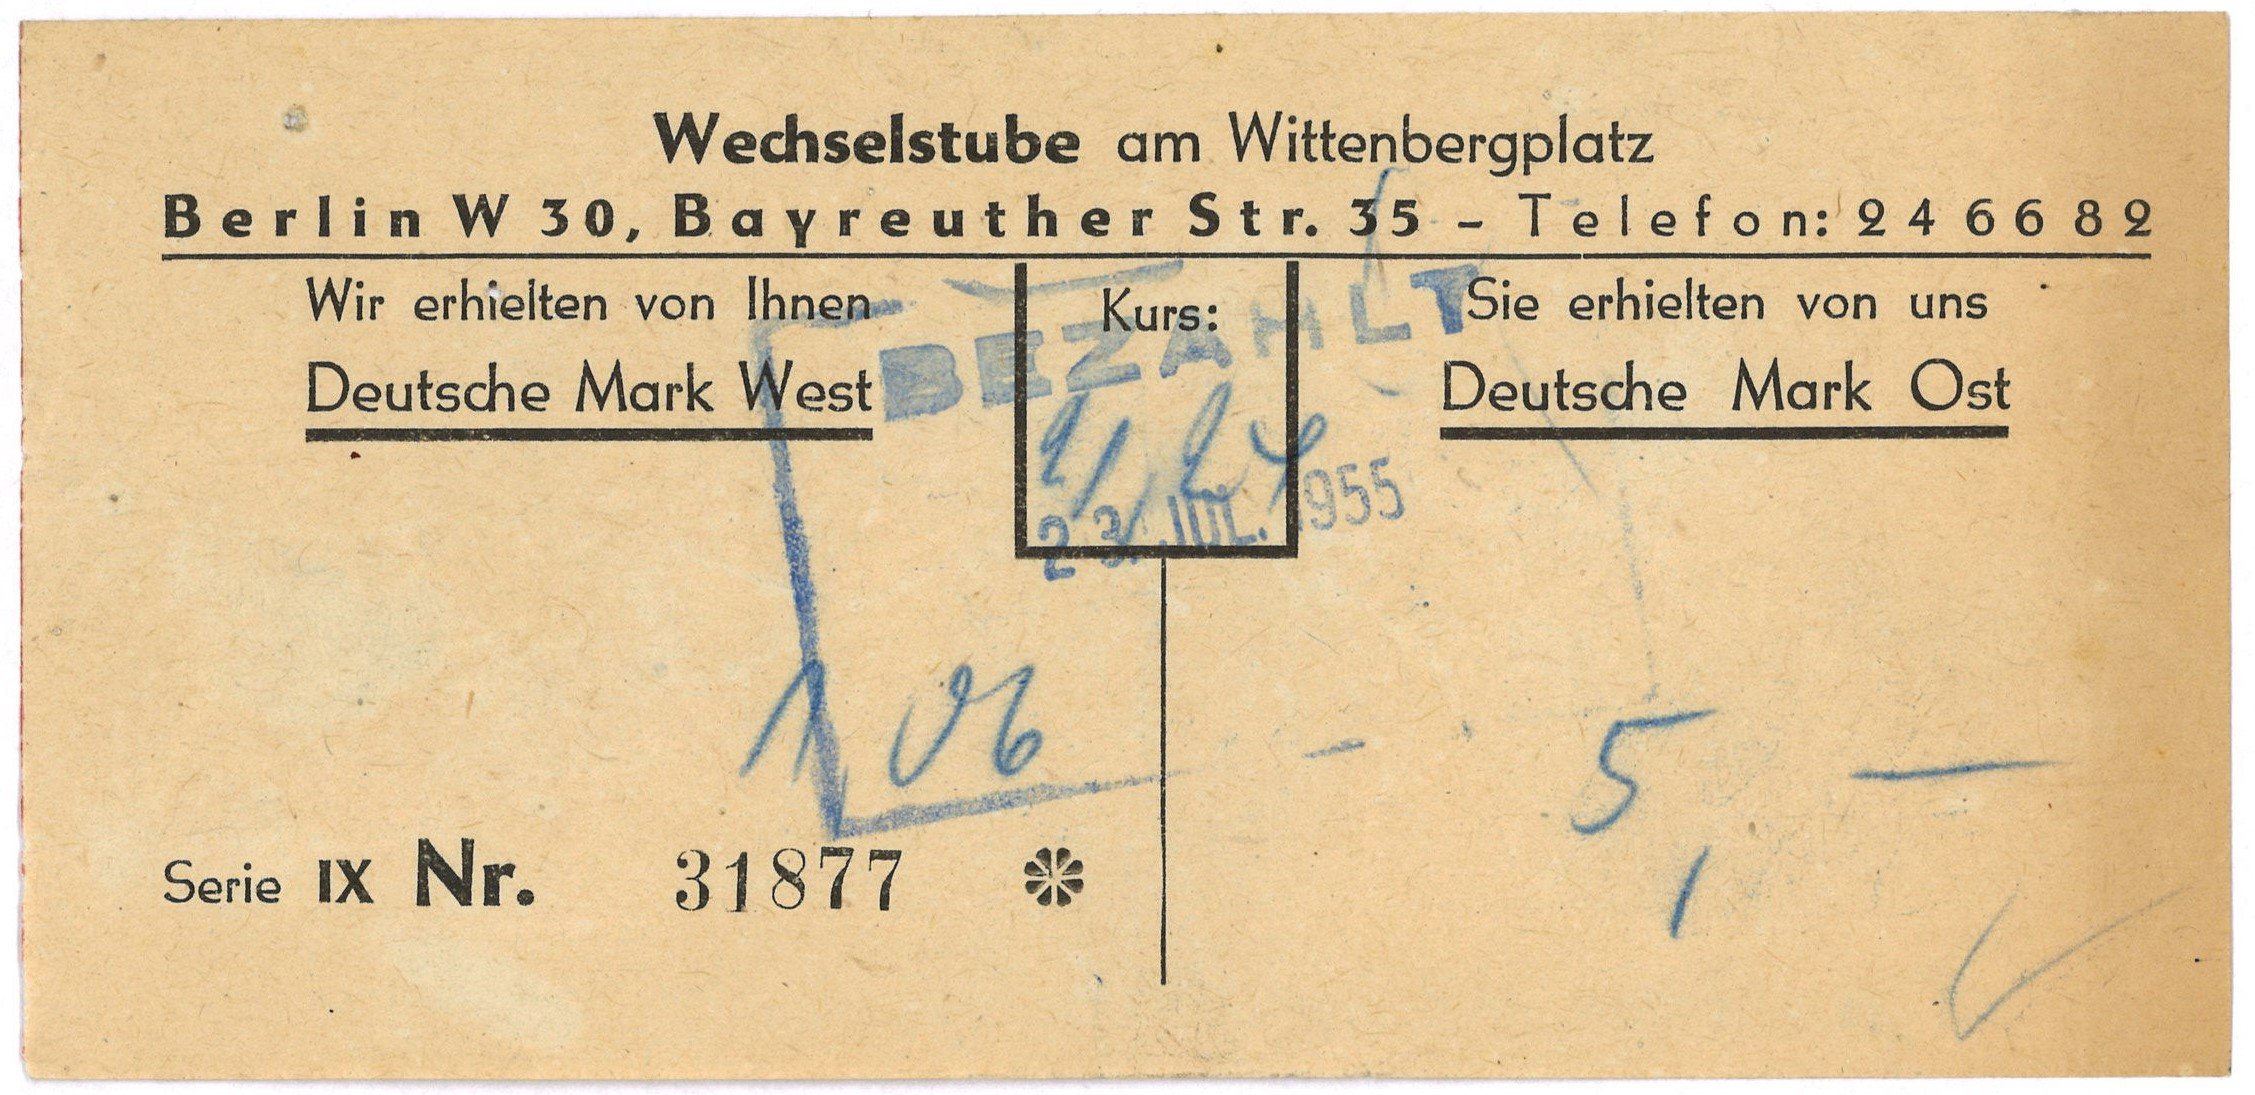 Umtauschquittung der Wechselstube am Wittenbergplatz in Berlin 1955 (Landesgeschichtliche Vereinigung für die Mark Brandenburg e.V., Archiv CC BY)